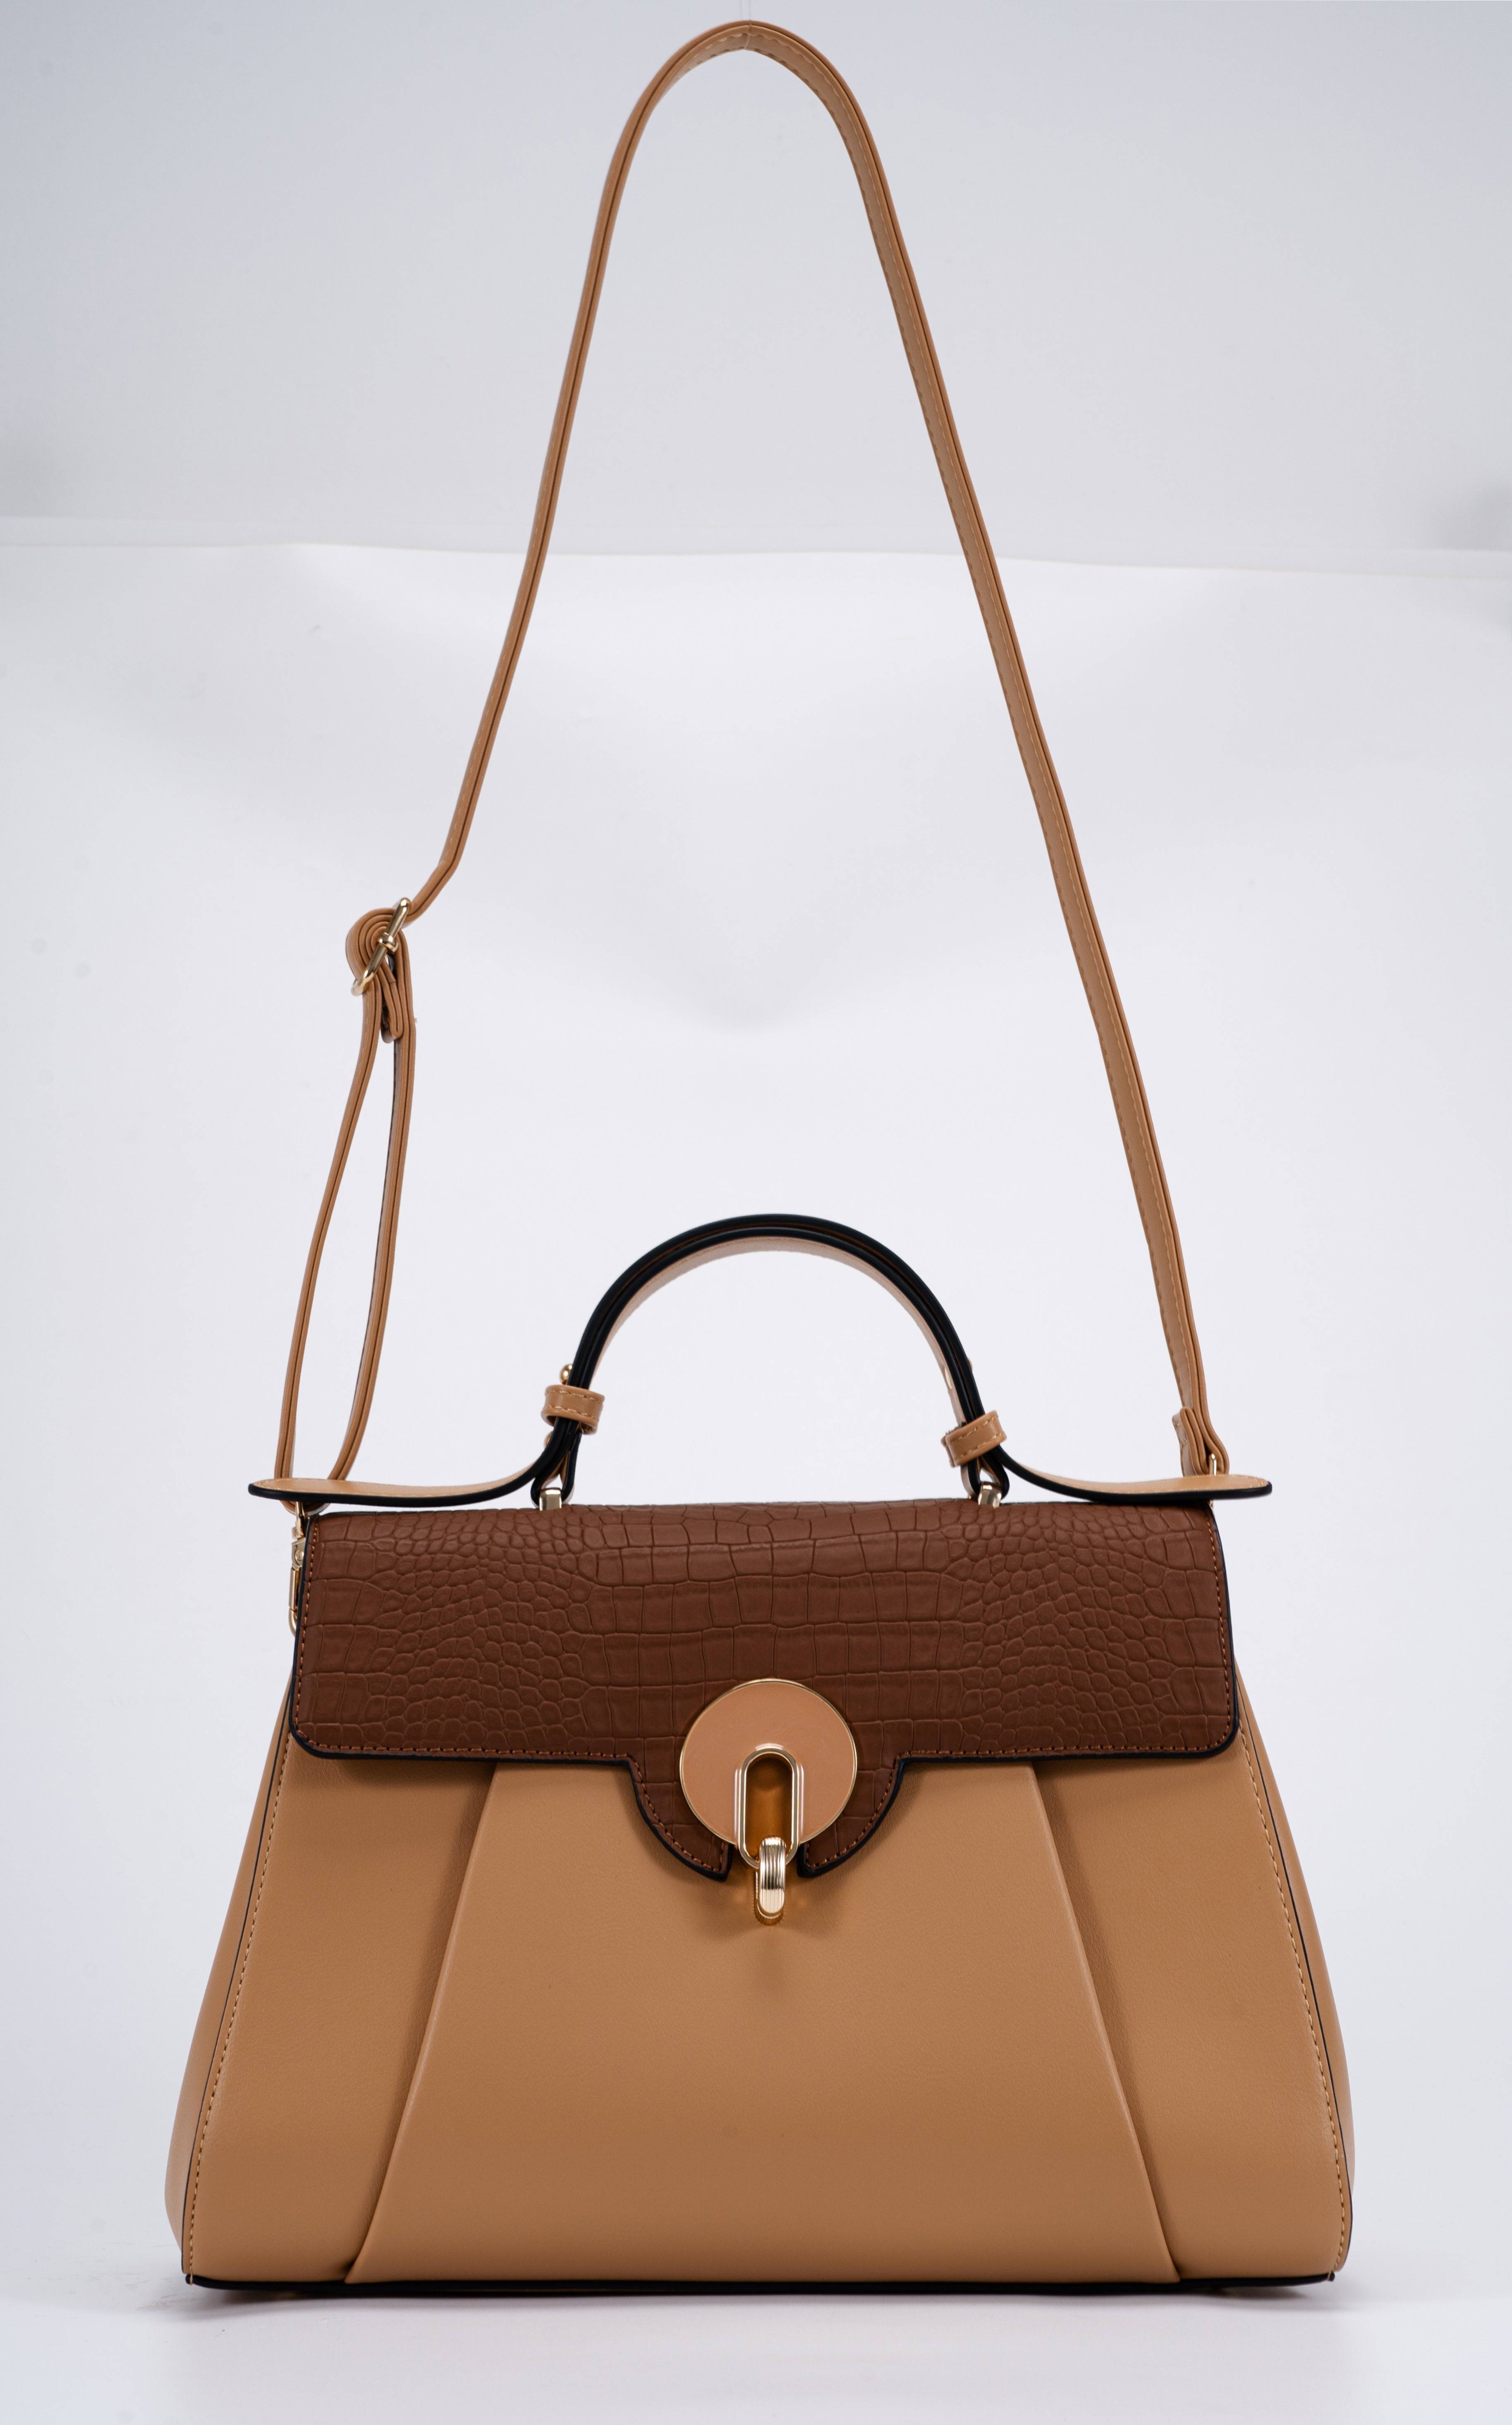 حقيبة يد نسائية باللون البنى بتصميم مختلف يجمع بين درجاتين لنفس اللون. - KSA